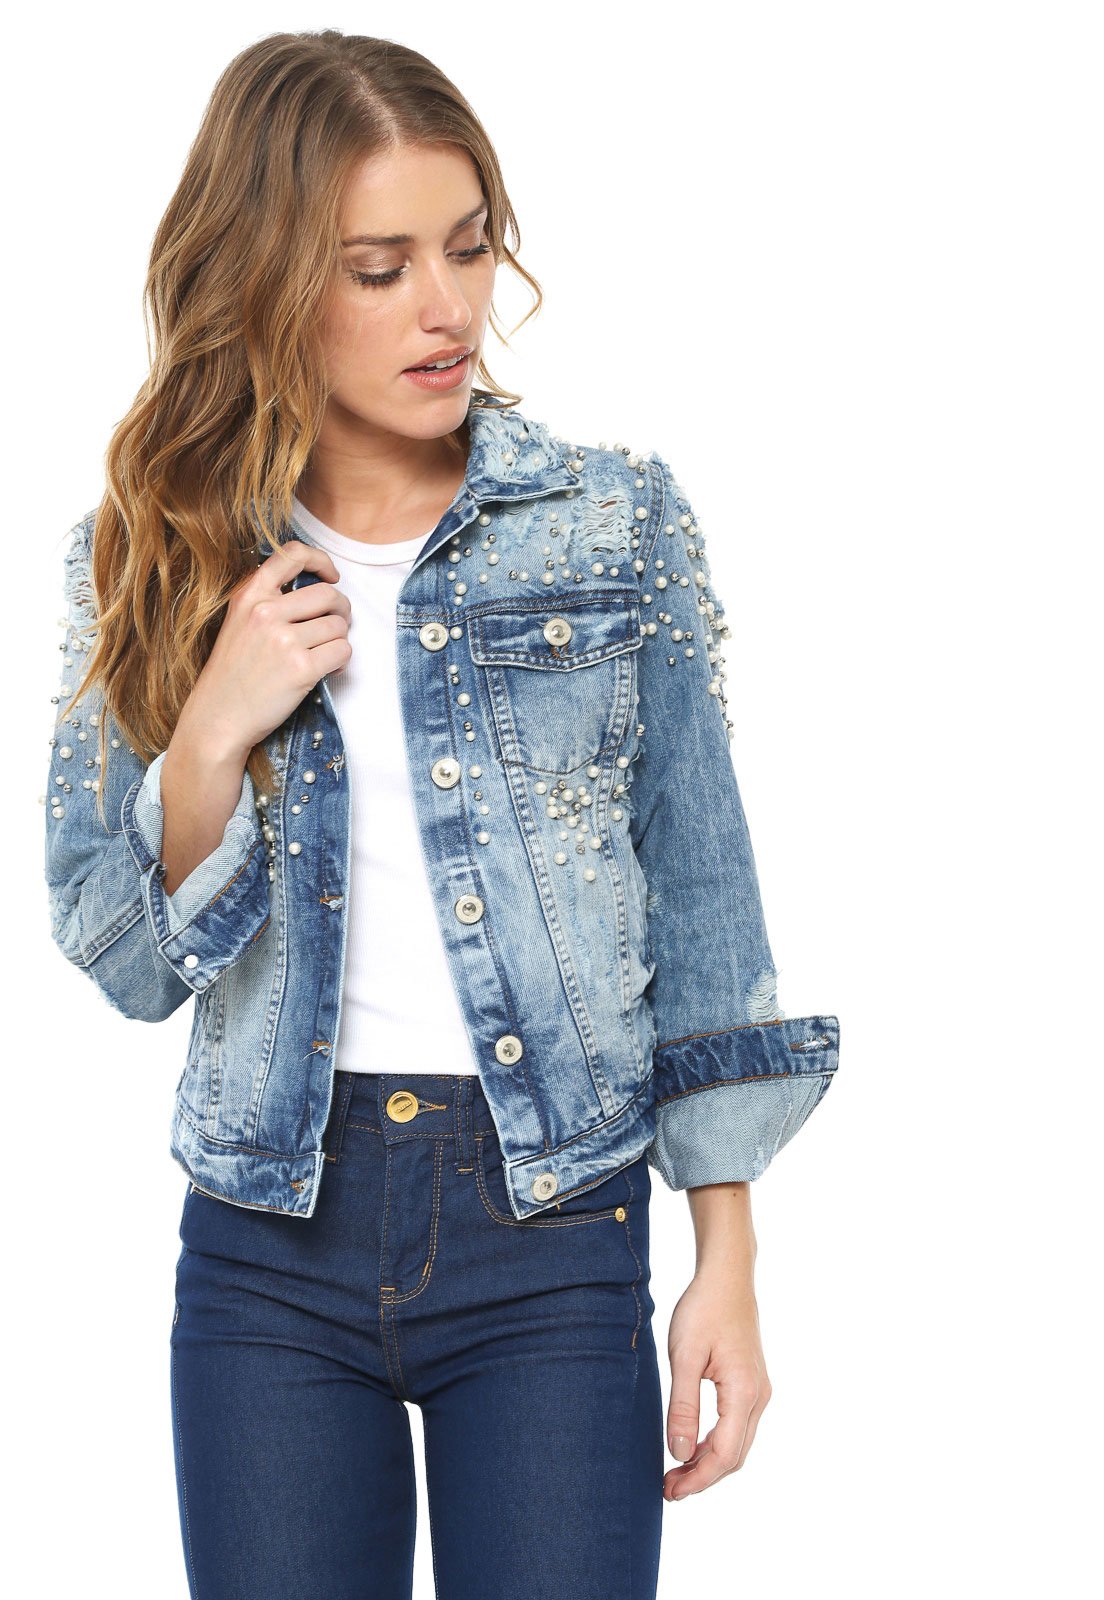 jaqueta jeans feminina com perola